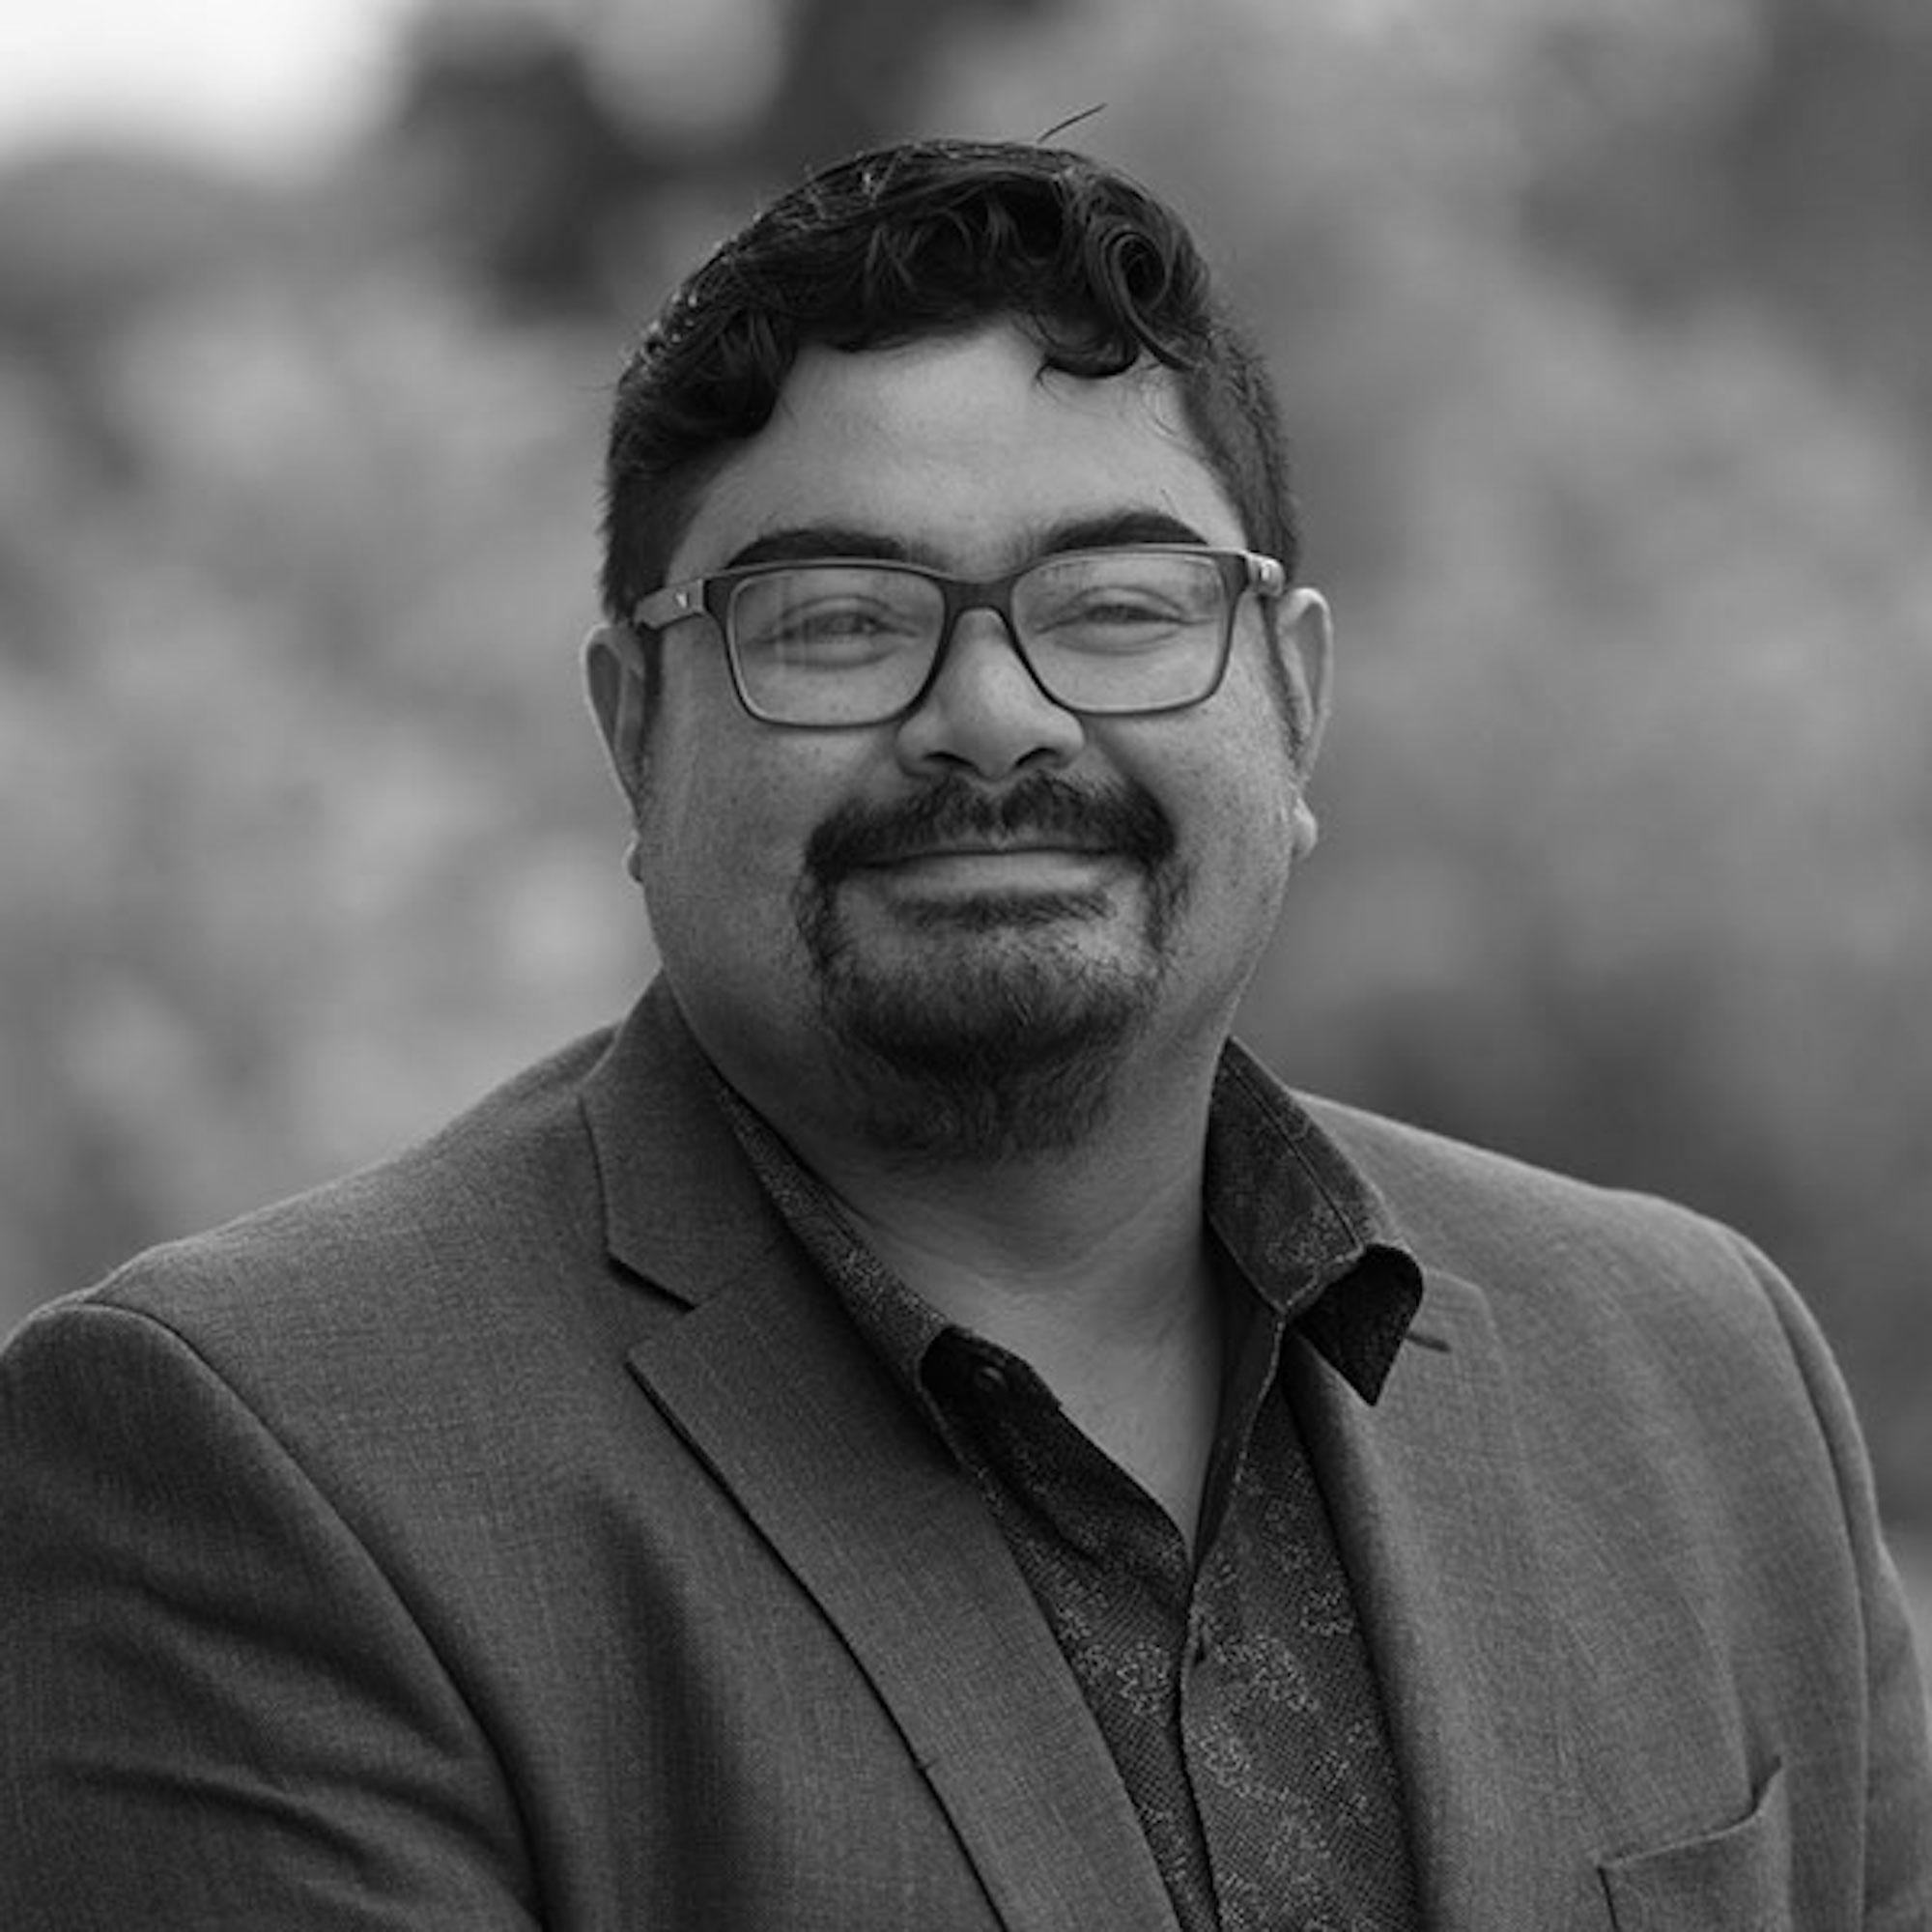 Ricardo Valencia es profesor asistente de Comunicaciones en Fullerton, la universidad estatal de California. Twitter: @ricardovalp.